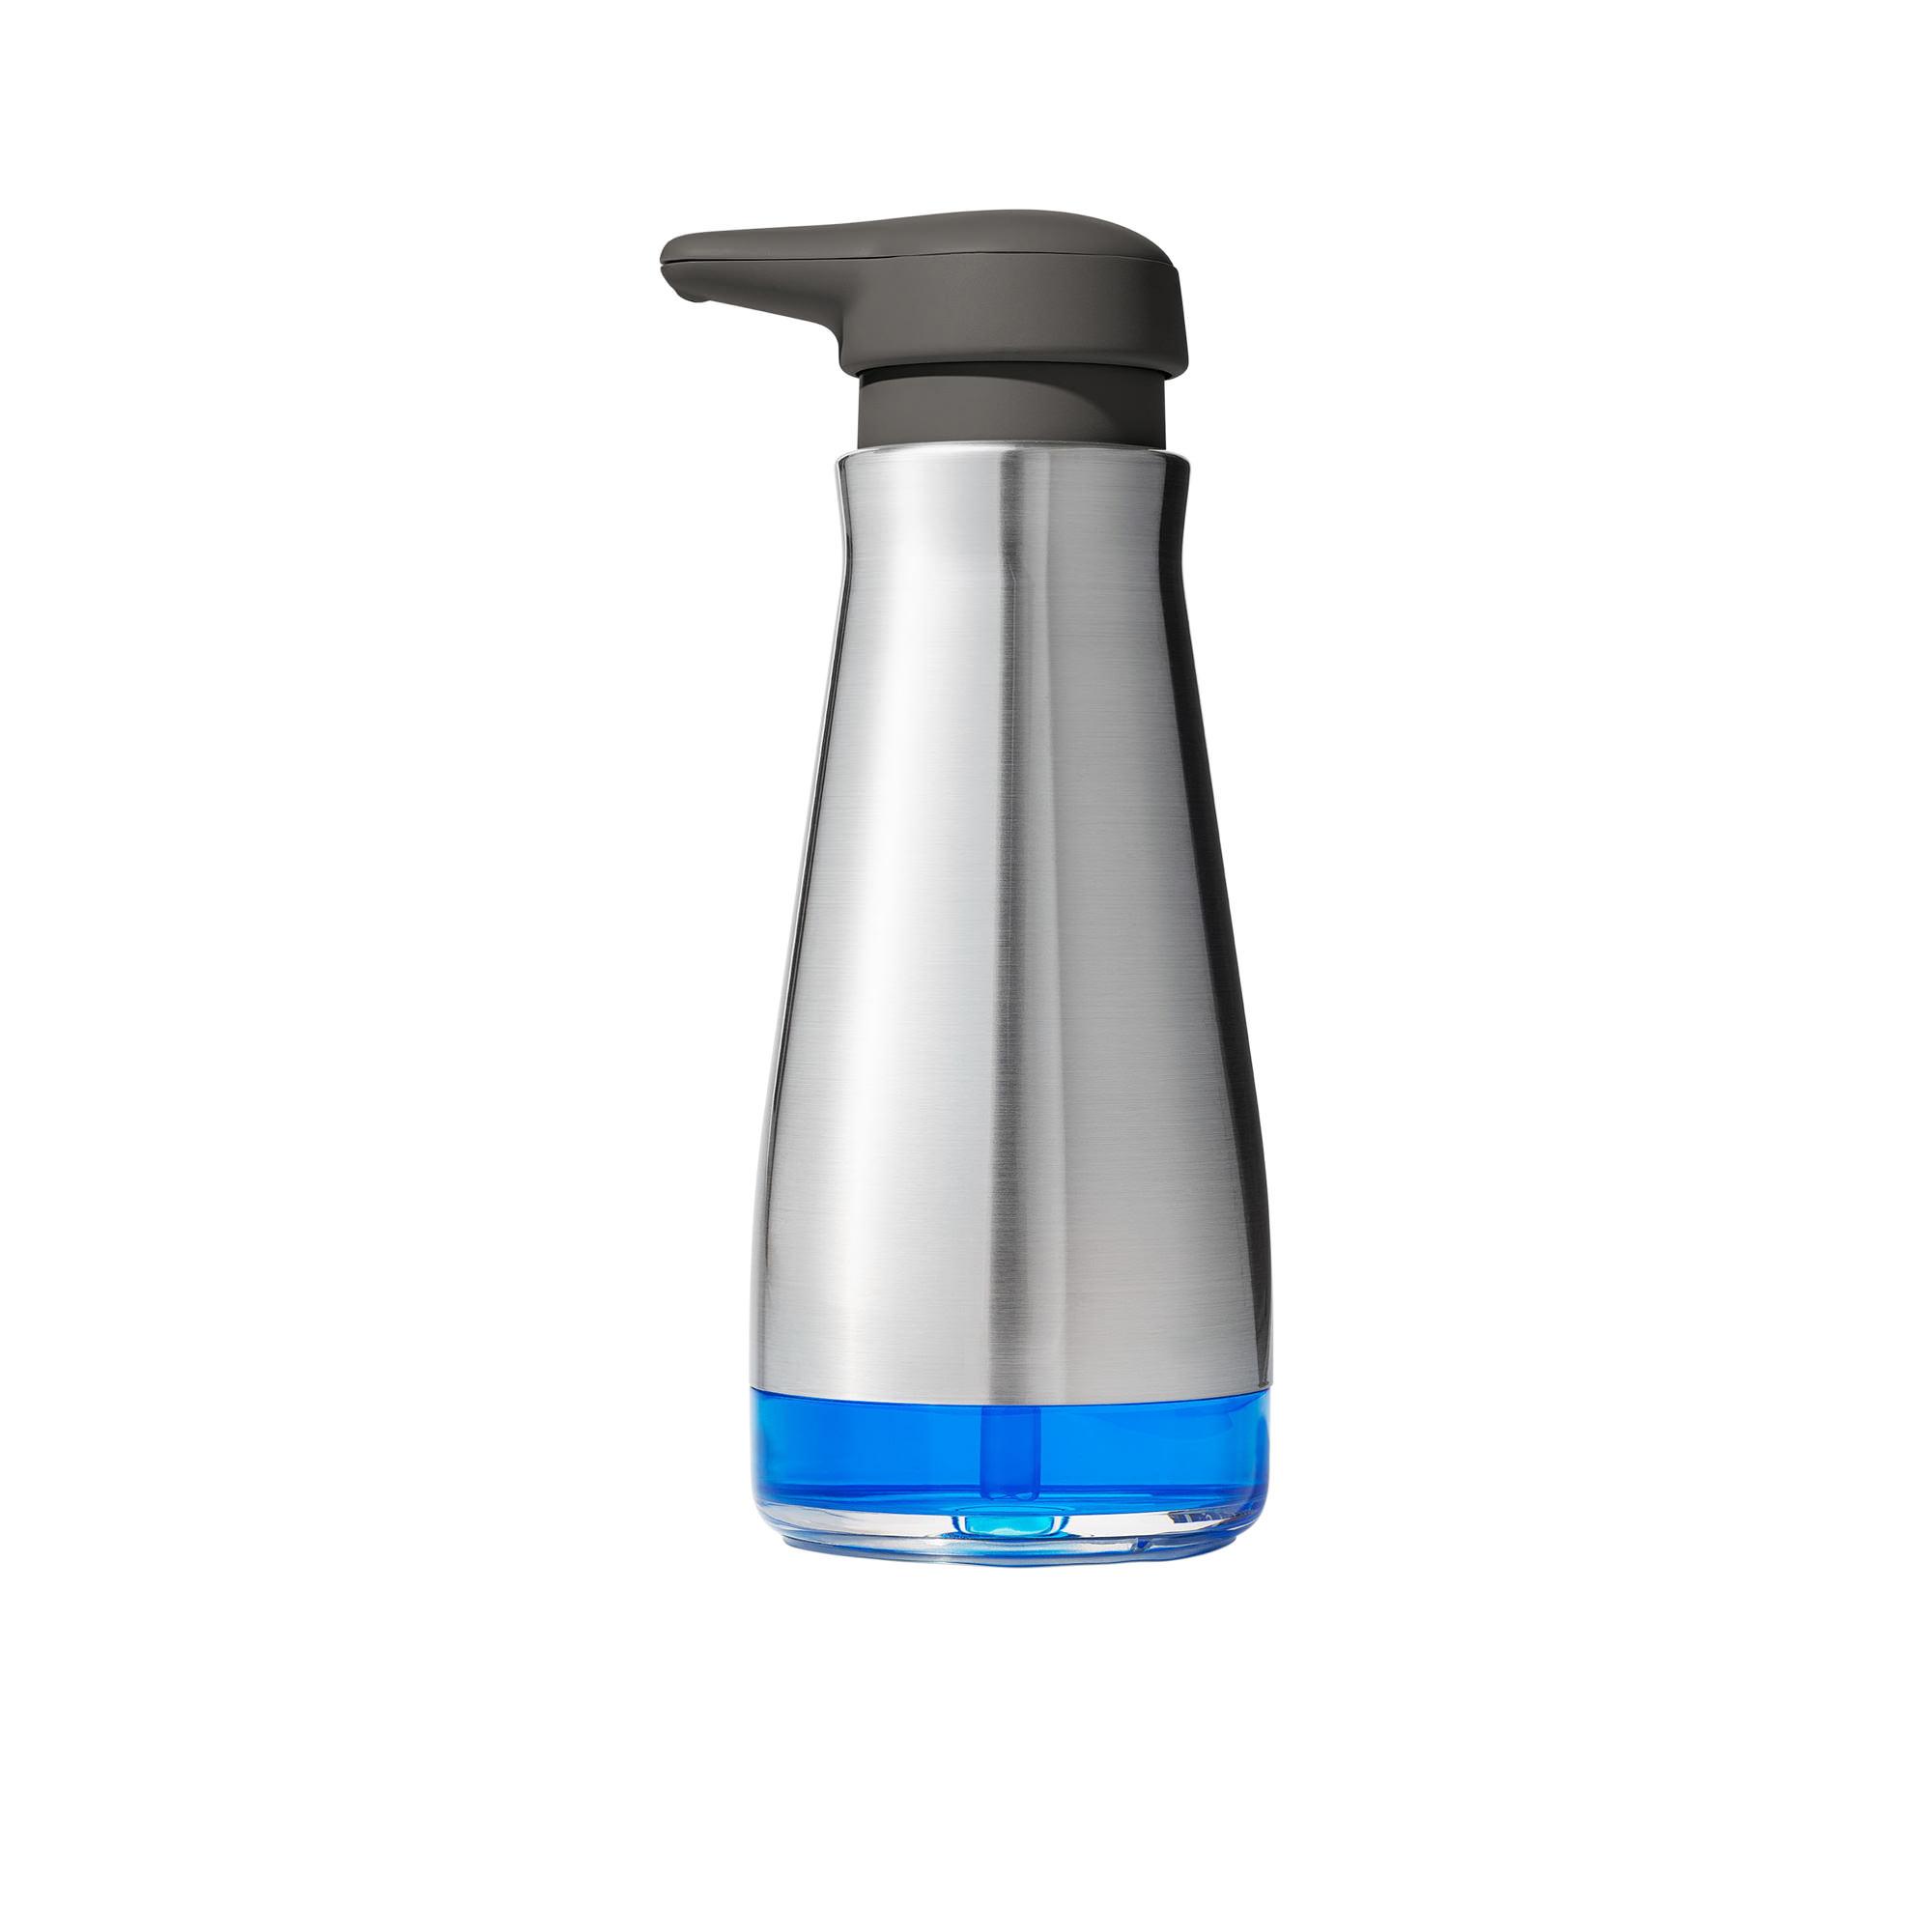 OXO Good Grips Soap Dispenser 7.3L Image 3